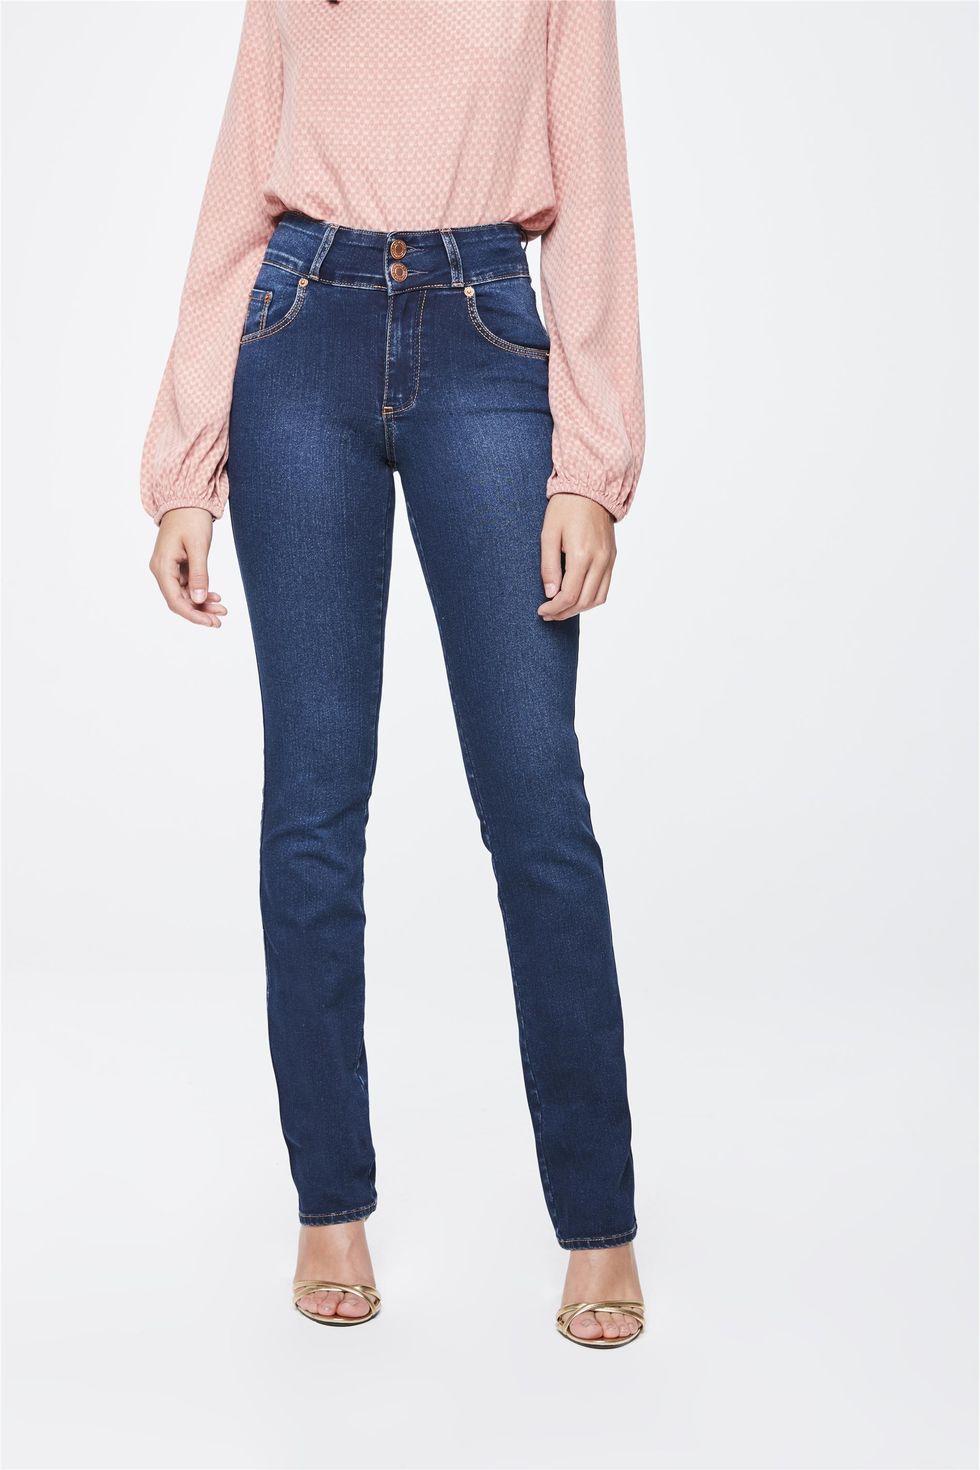 damyller jeans feminino